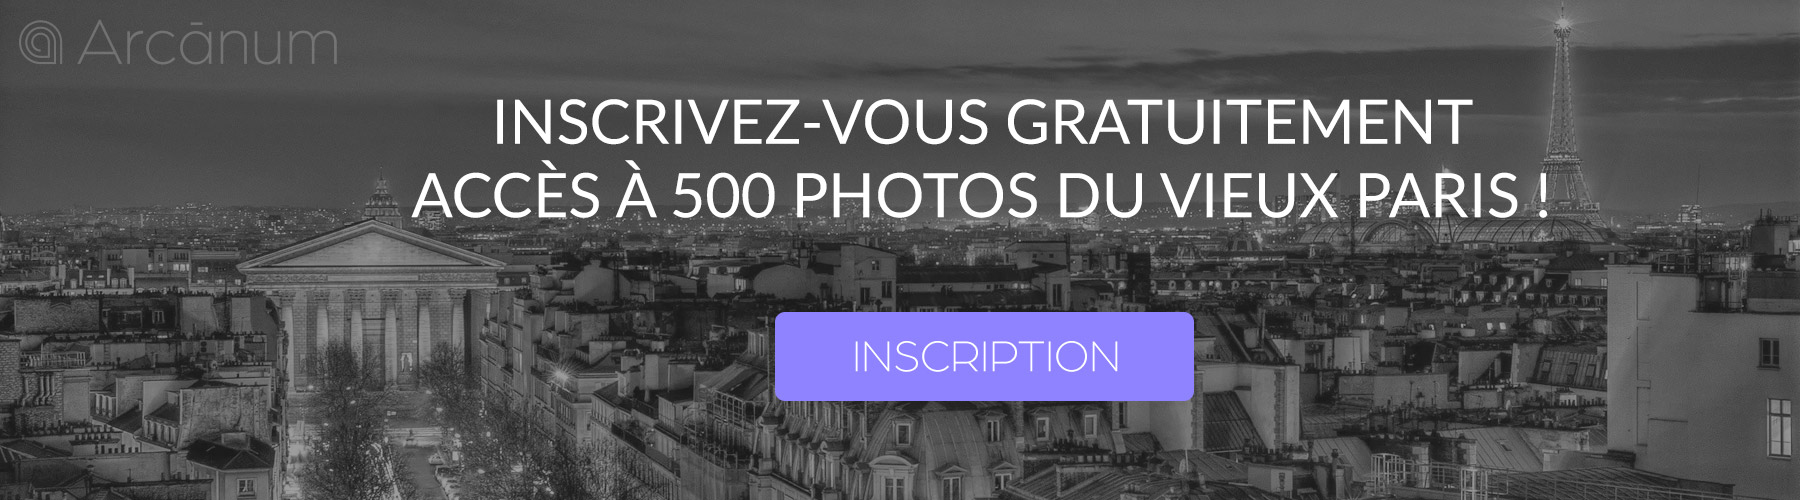 BANNIERE_INSCRIPTION_ARCANUM_PARIS-AVANT_TABLETTE_6.jpg